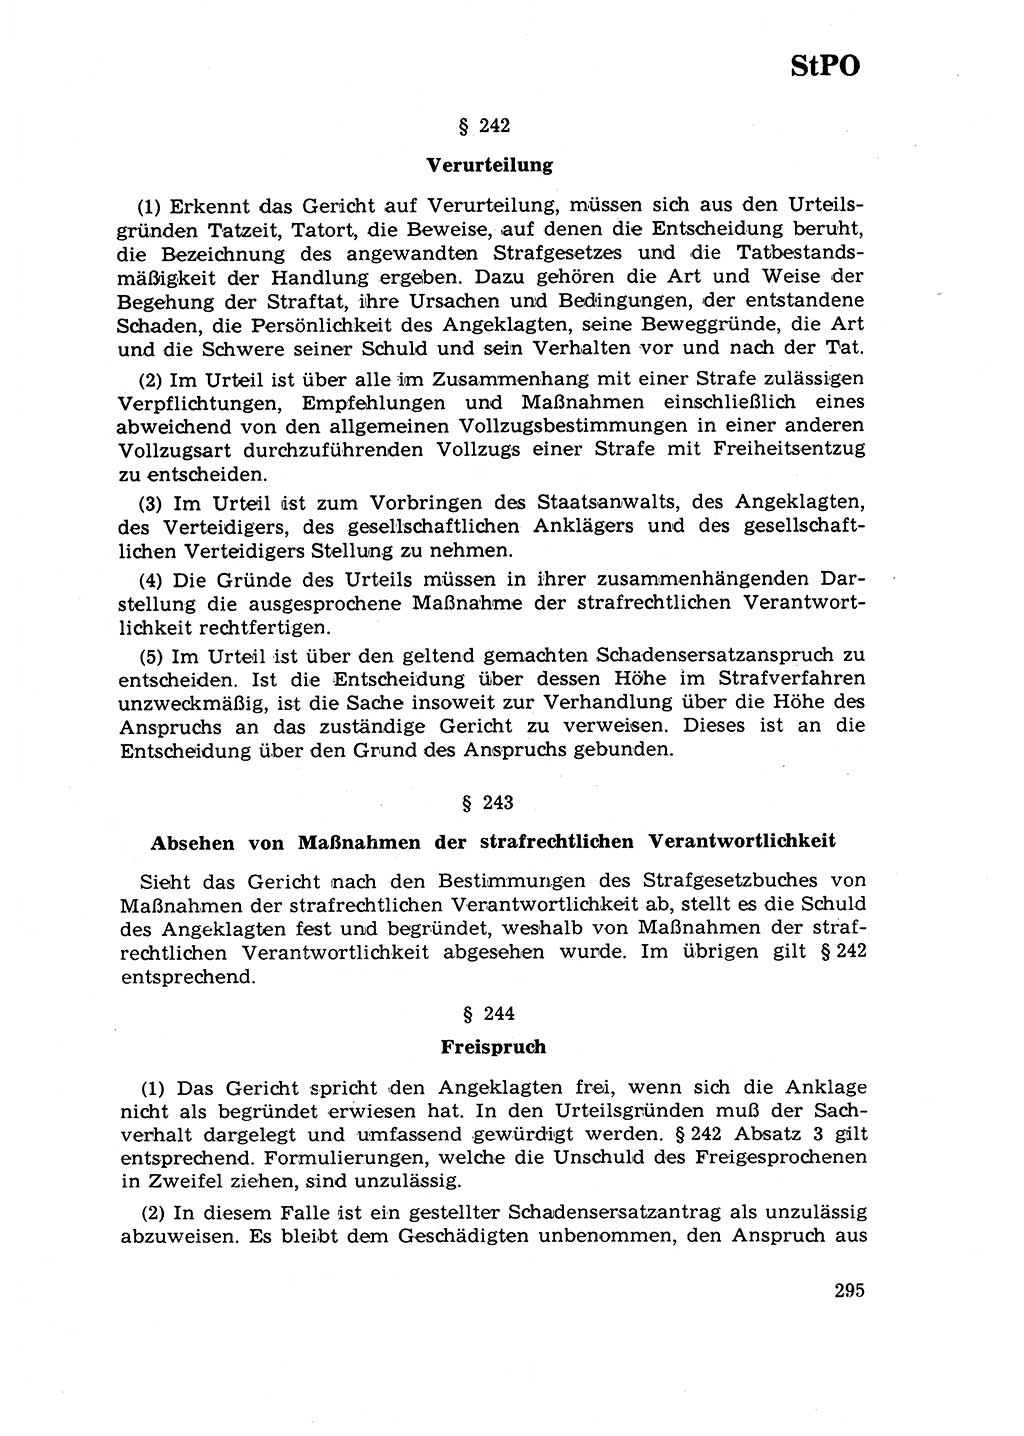 Strafrecht [Deutsche Demokratische Republik (DDR)] 1968, Seite 295 (Strafr. DDR 1968, S. 295)